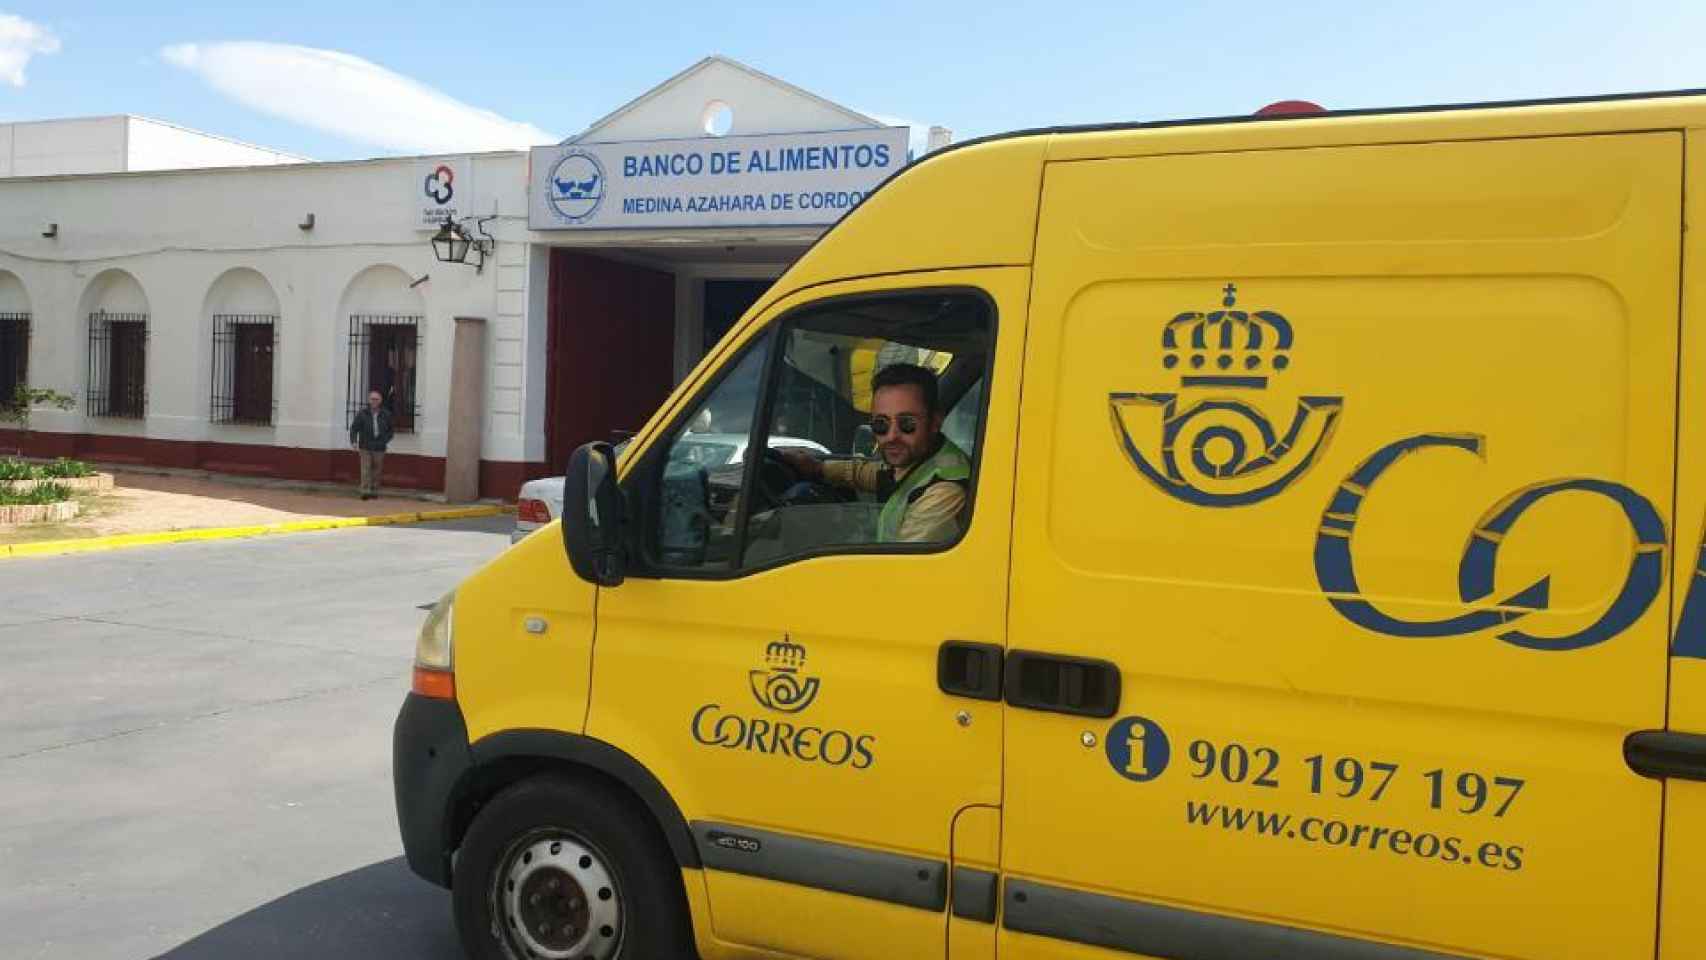 Correos transporta producto de primera necesidad al Banco de Alimentos, Córdoba.